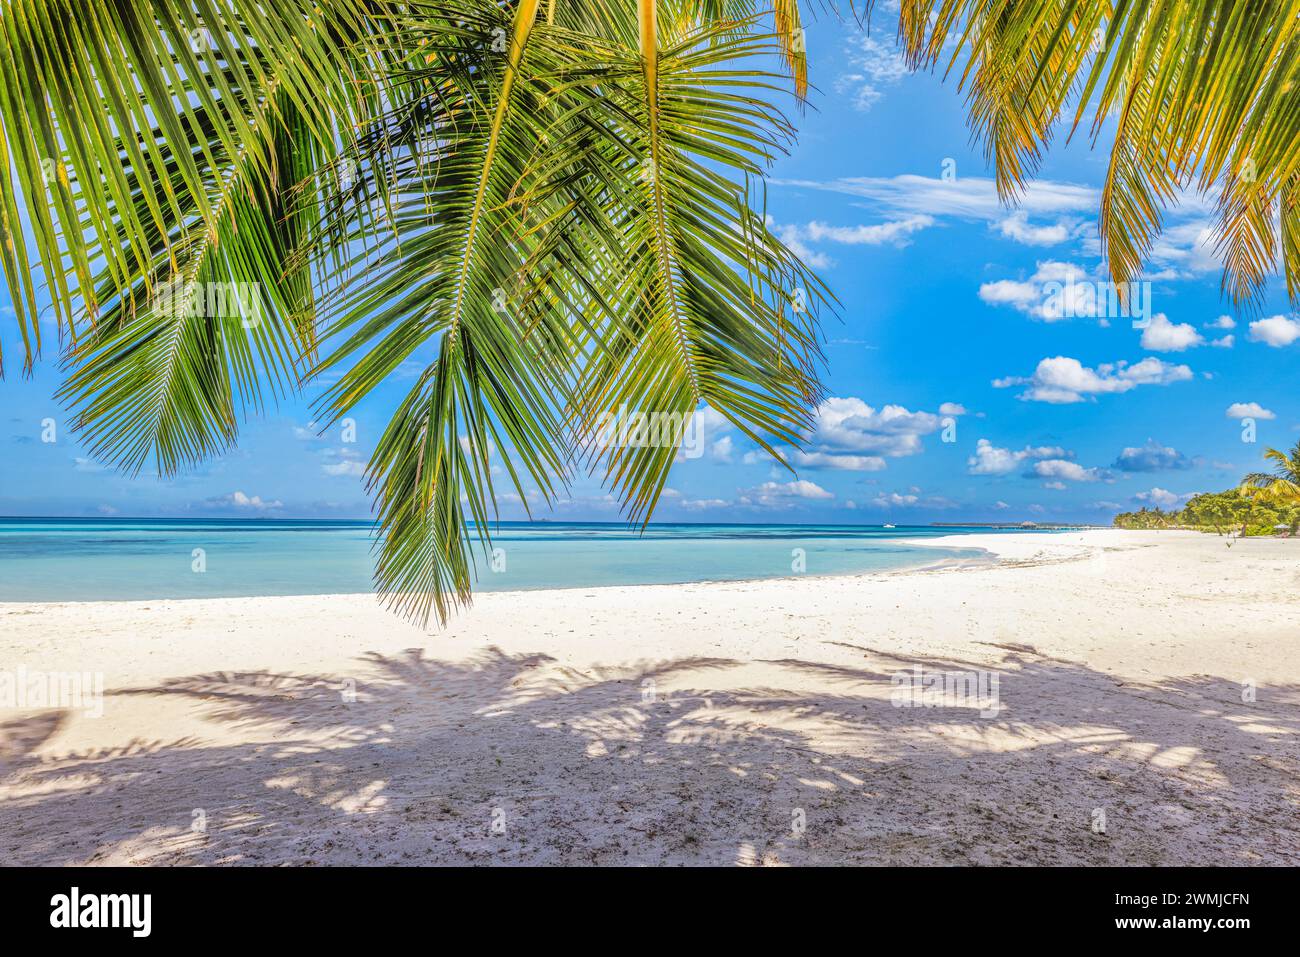 Paesaggio estivo della spiaggia. costa tropicale dell'isola, costa con foglie di palma. Incredibile orizzonte di mare blu, cielo luminoso e sabbia bianca come vacanza rilassante Foto Stock